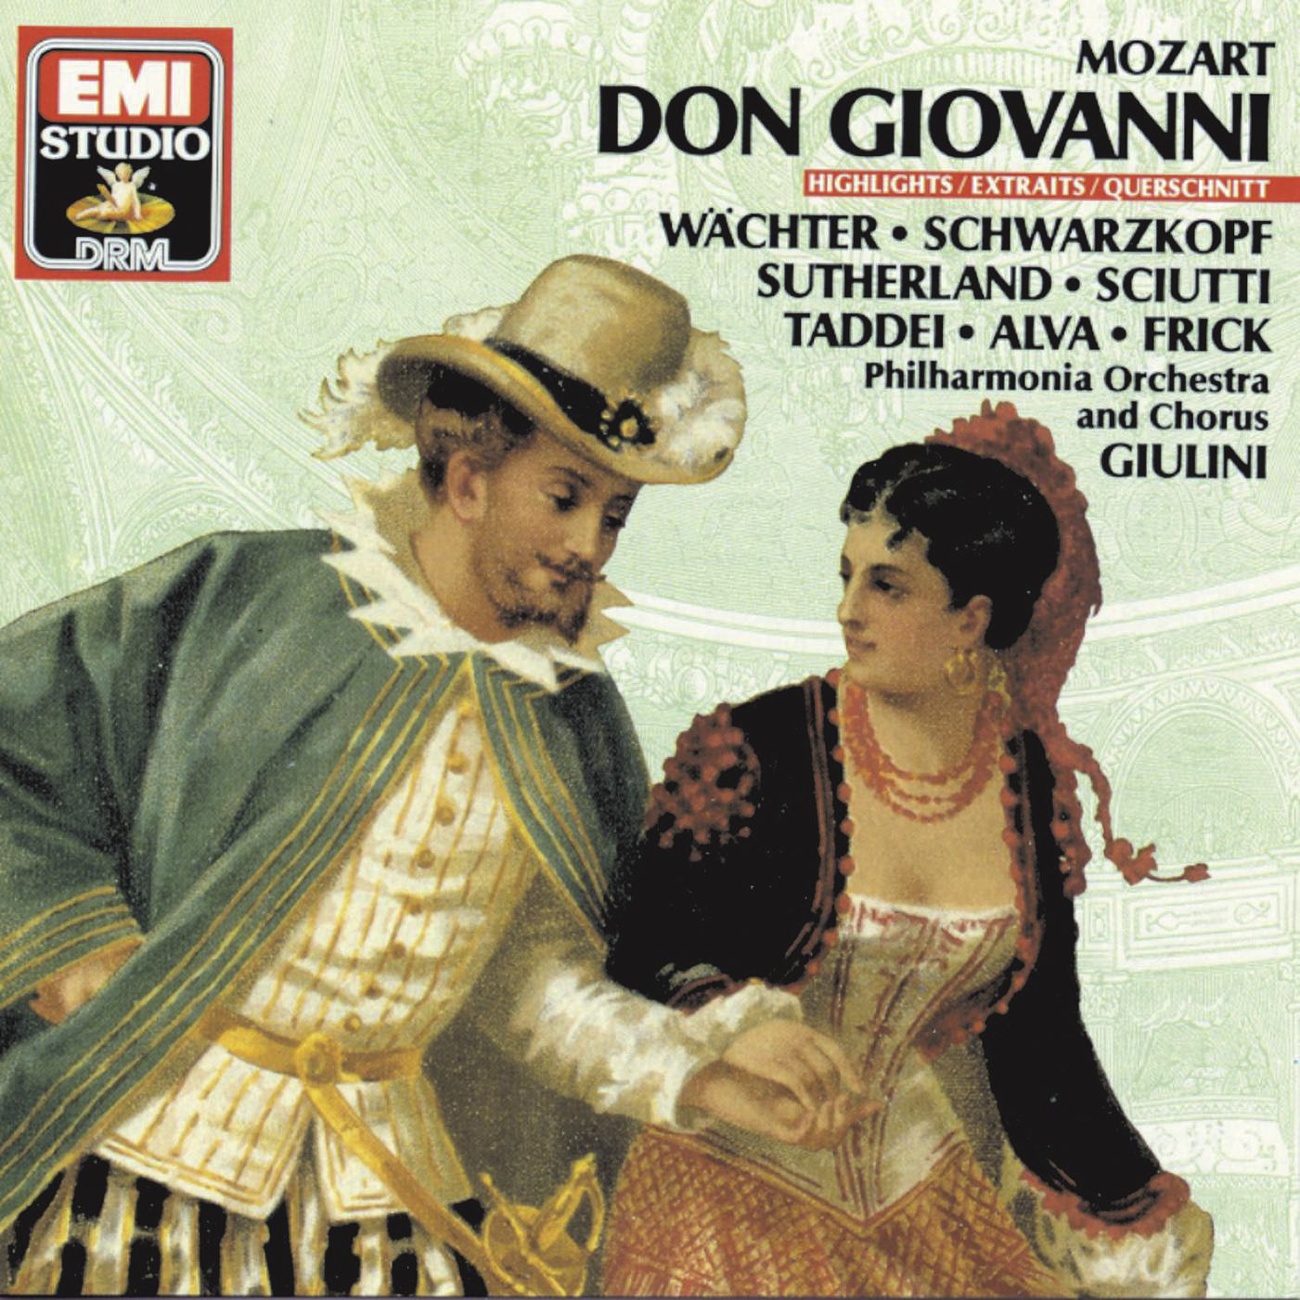 Don Giovanni (1987 Digital Remaster), Act 1: Là ci darem la mano (Don Giovanni, Zerlina)